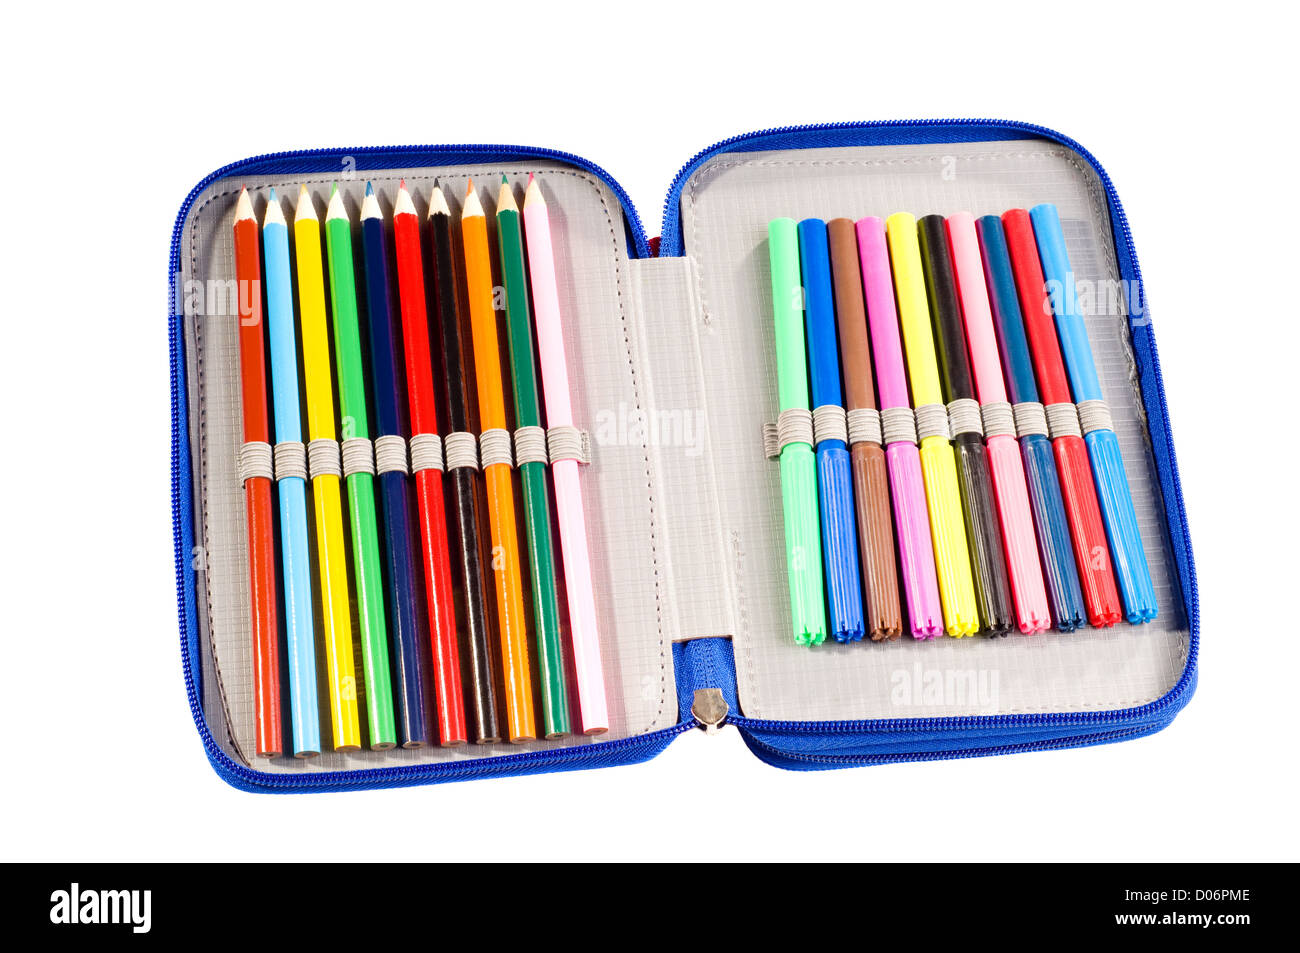 https://c8.alamy.com/comp/D06PME/pencil-case-full-of-felt-tip-pens-and-crayons-D06PME.jpg